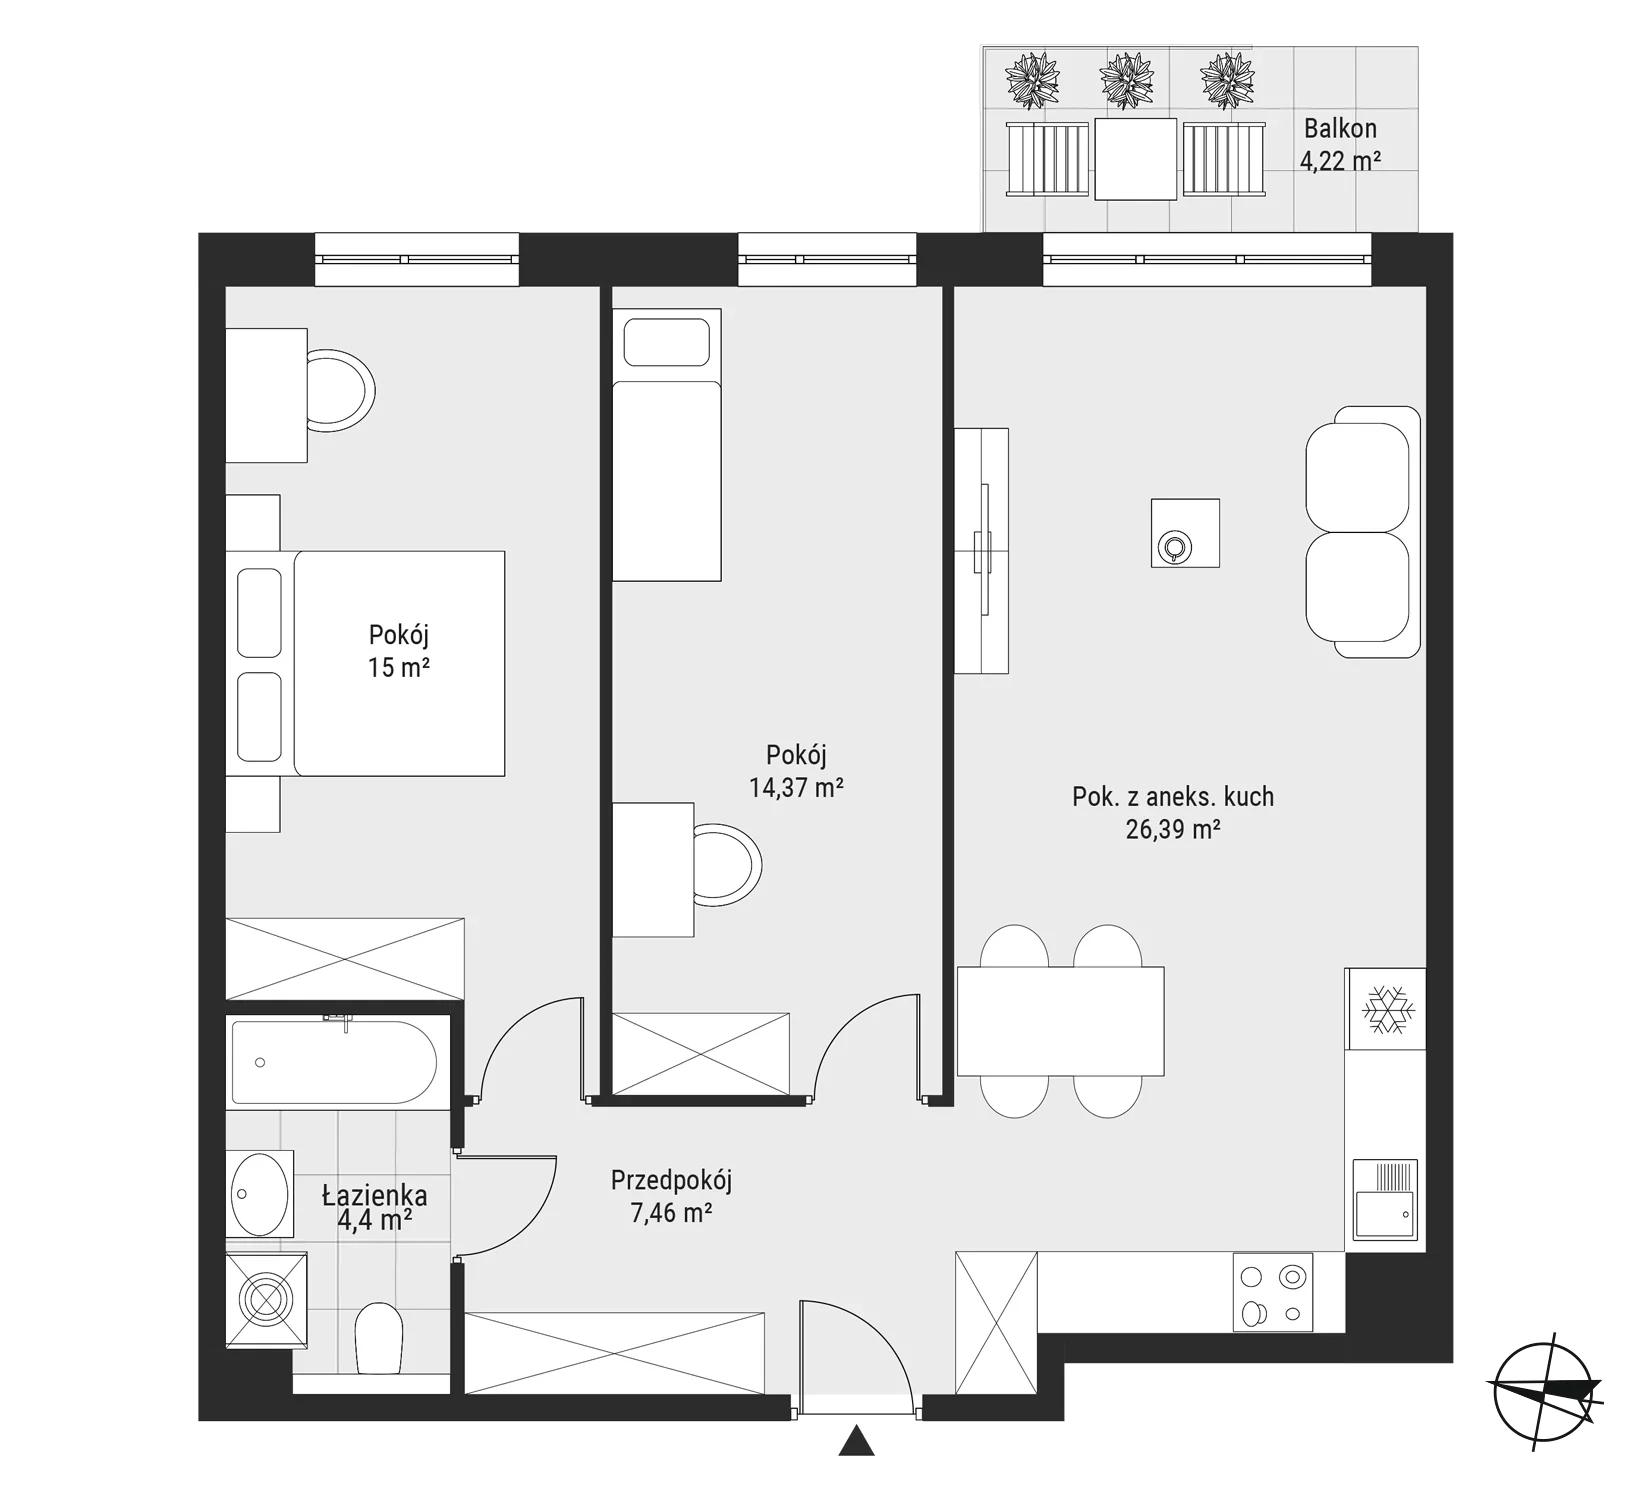 Mieszkanie 67,62 m², piętro 2, oferta nr mieszkanie 26, Bytkowska 3.0, Katowice, Wełnowiec-Józefowiec, ul. Bytkowska